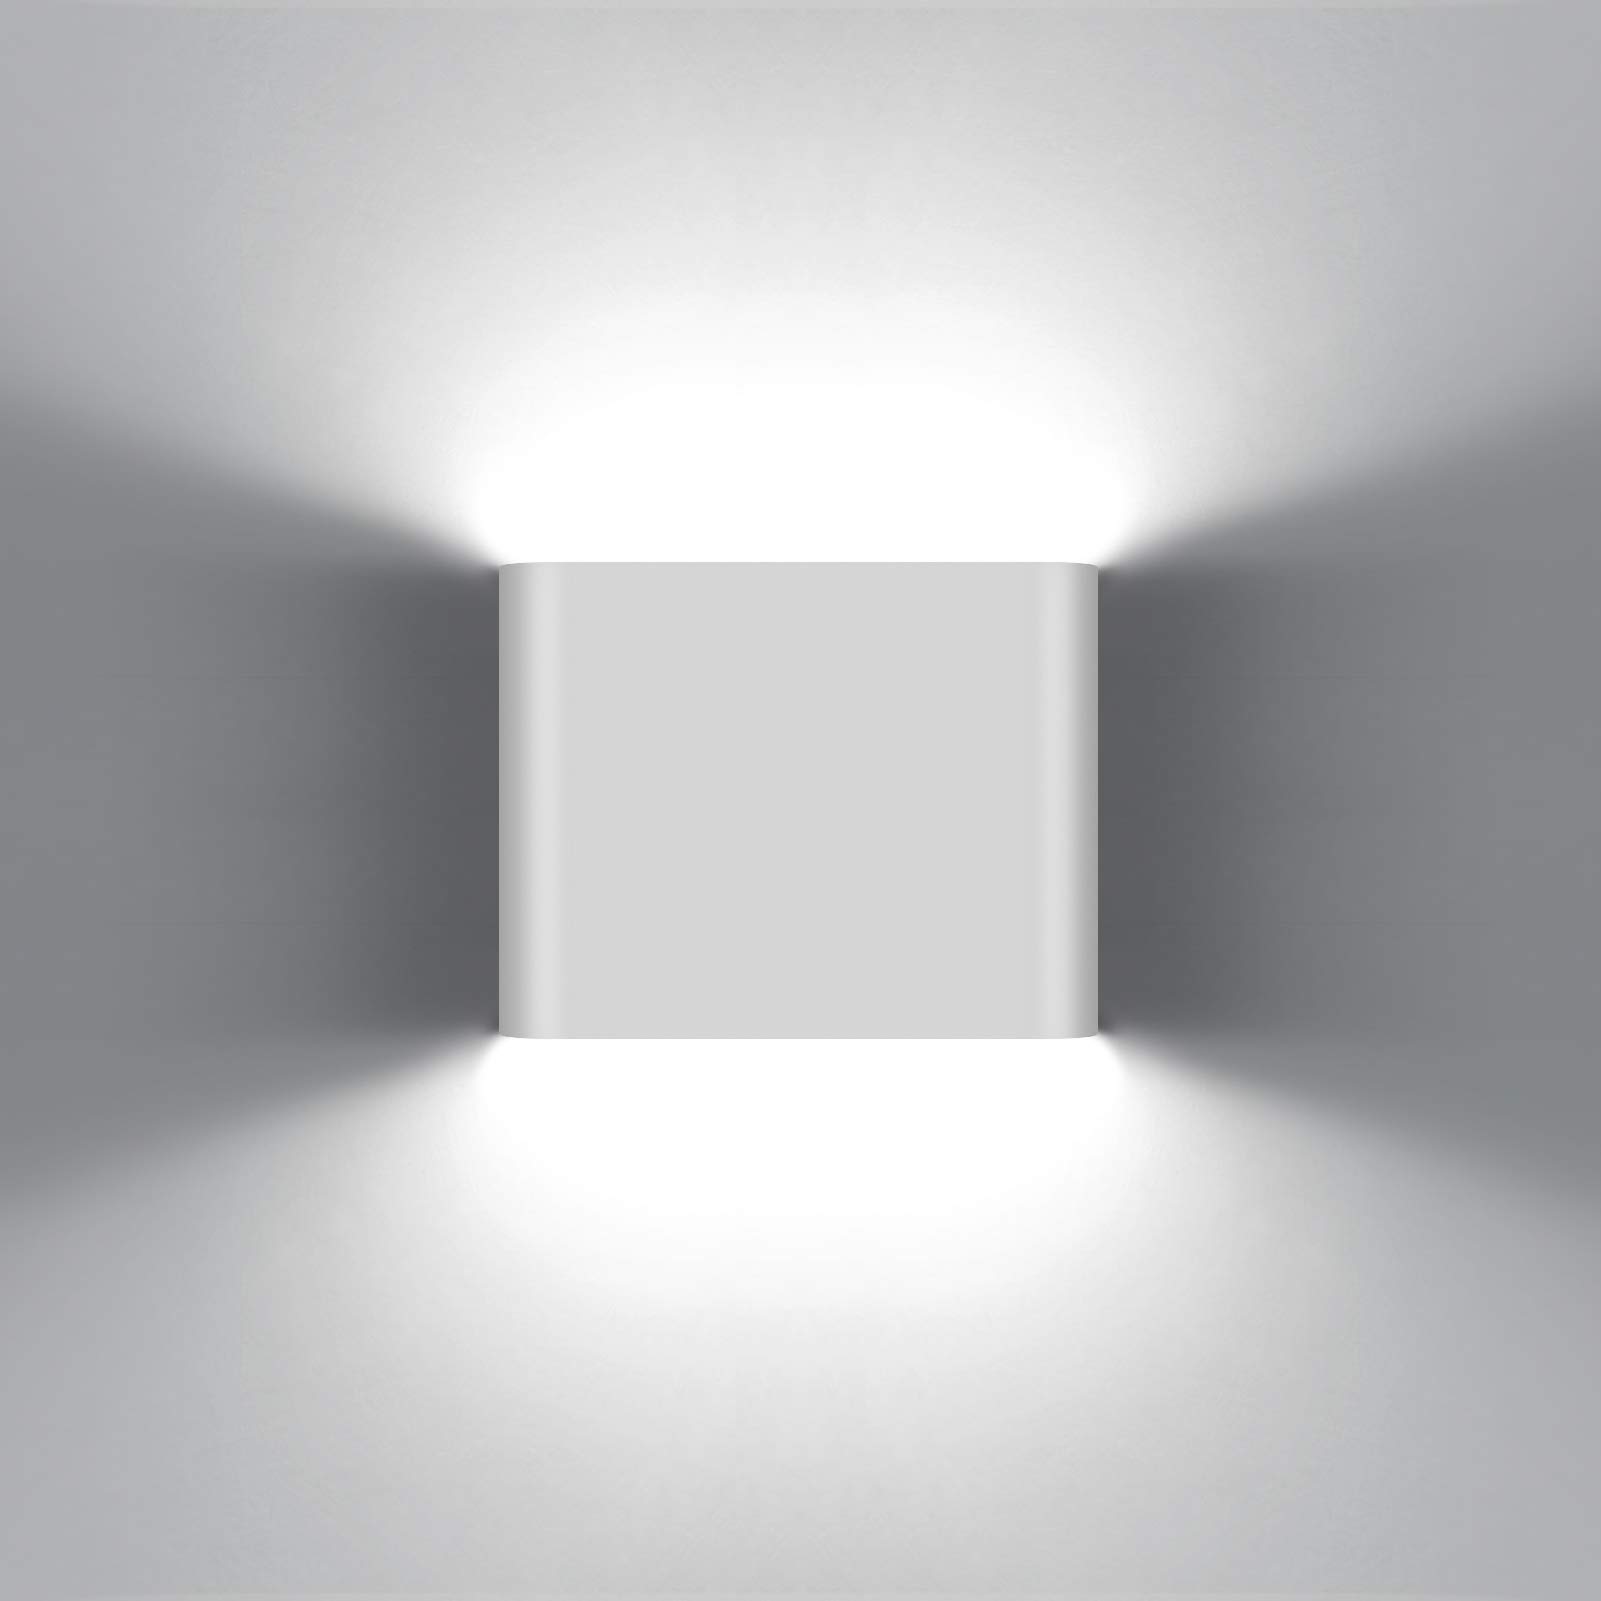 KAWELL 6W Modern Wandlampe LED Wandleuchte Up Down Aluminium Wandbeleuchtung Wasserdicht IP65 Innen Außen für Schlafzimmer Badezimmer Wohnzimmer Flur Treppen Korridor, Weiß 6000K